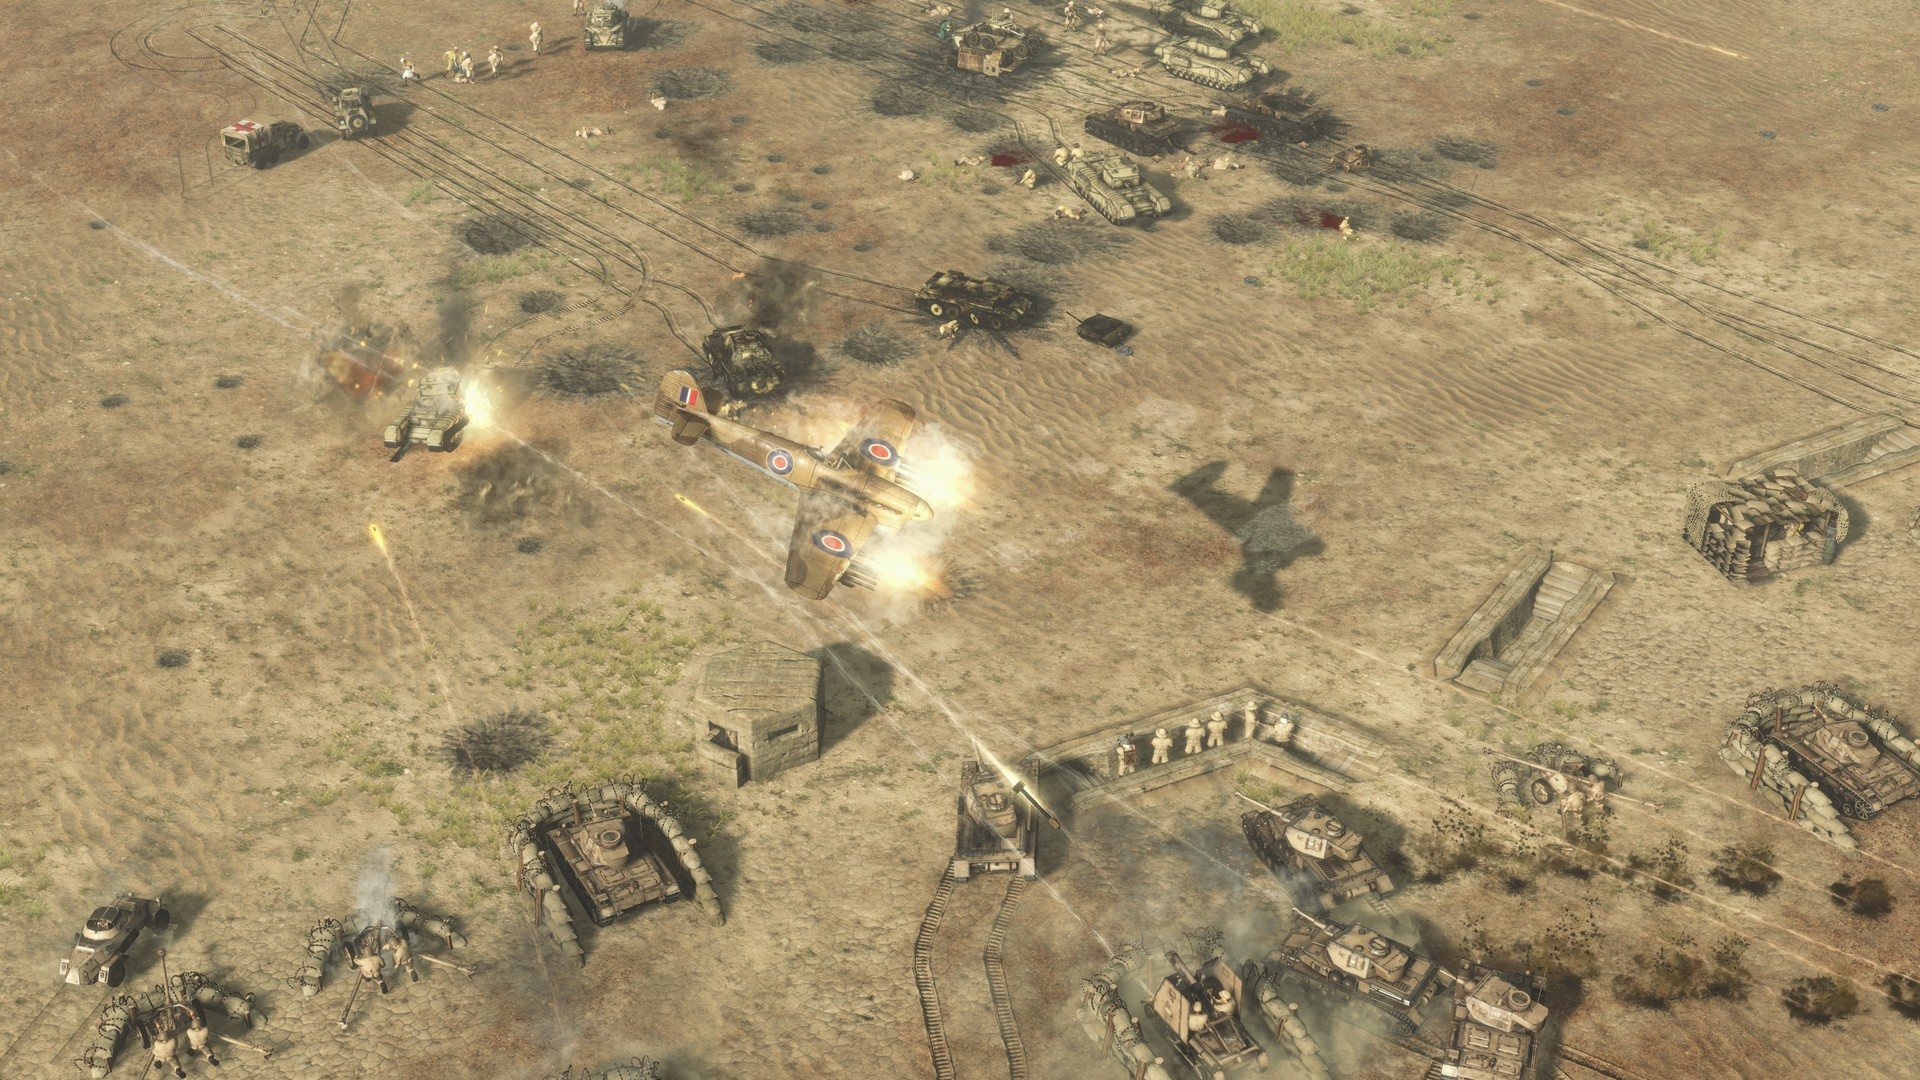 Sudden Strike 4 - Africa: Desert War DLC Steam CD Key 1.8 usd